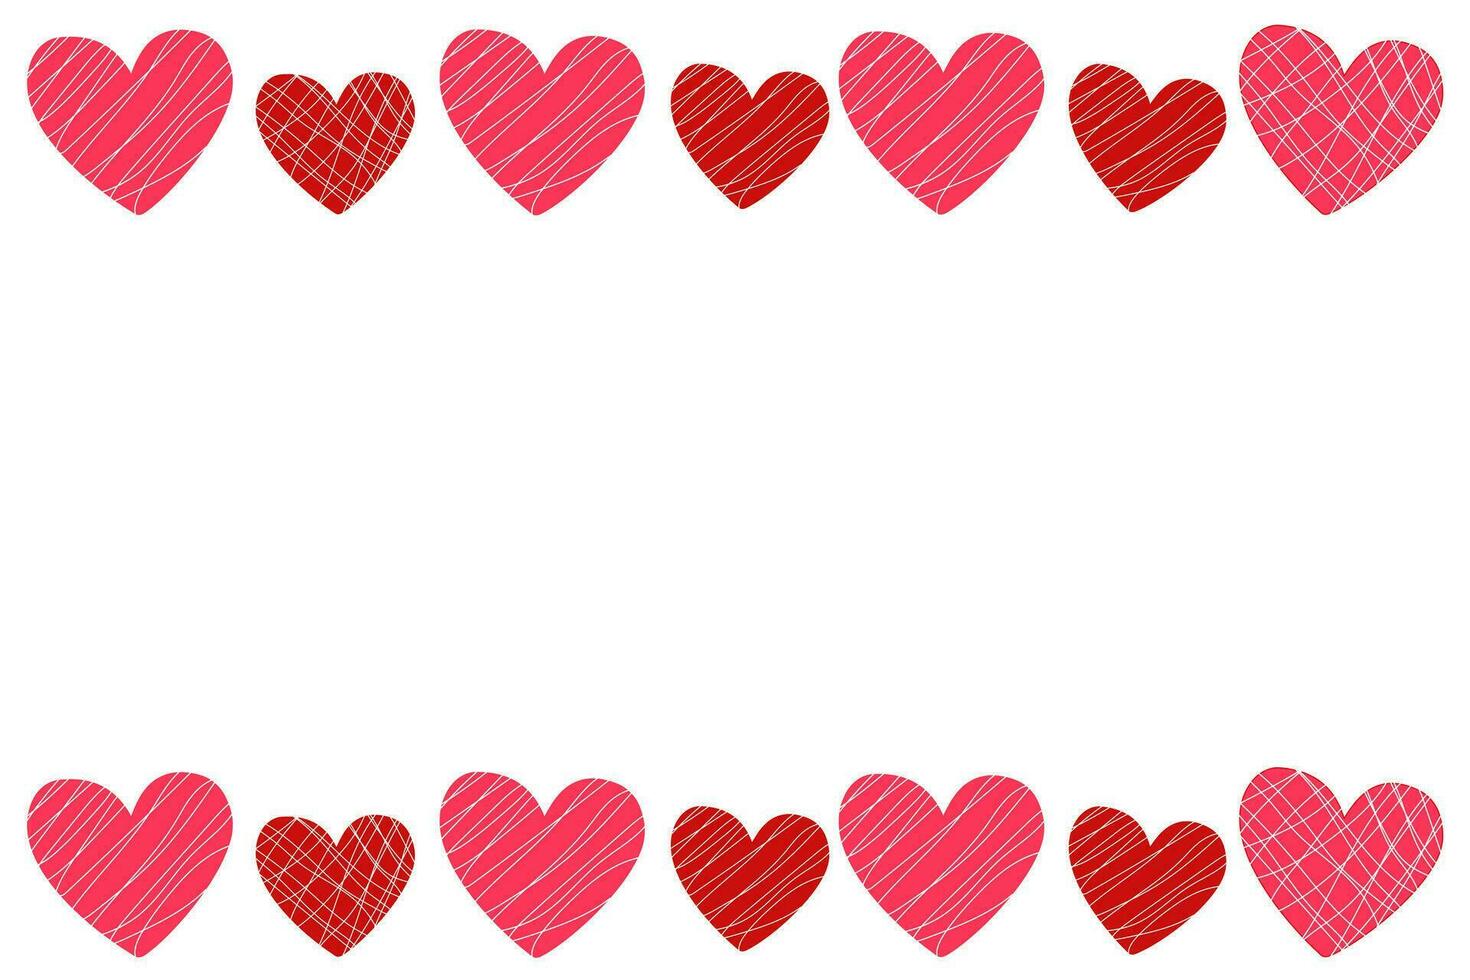 vector wit achtergrond, banier met een kader van rood en roze harten, snoepjes in glazuur met plaats voor tekst voor de vakantie valentijnsdag dag, bruiloft, verjaardag